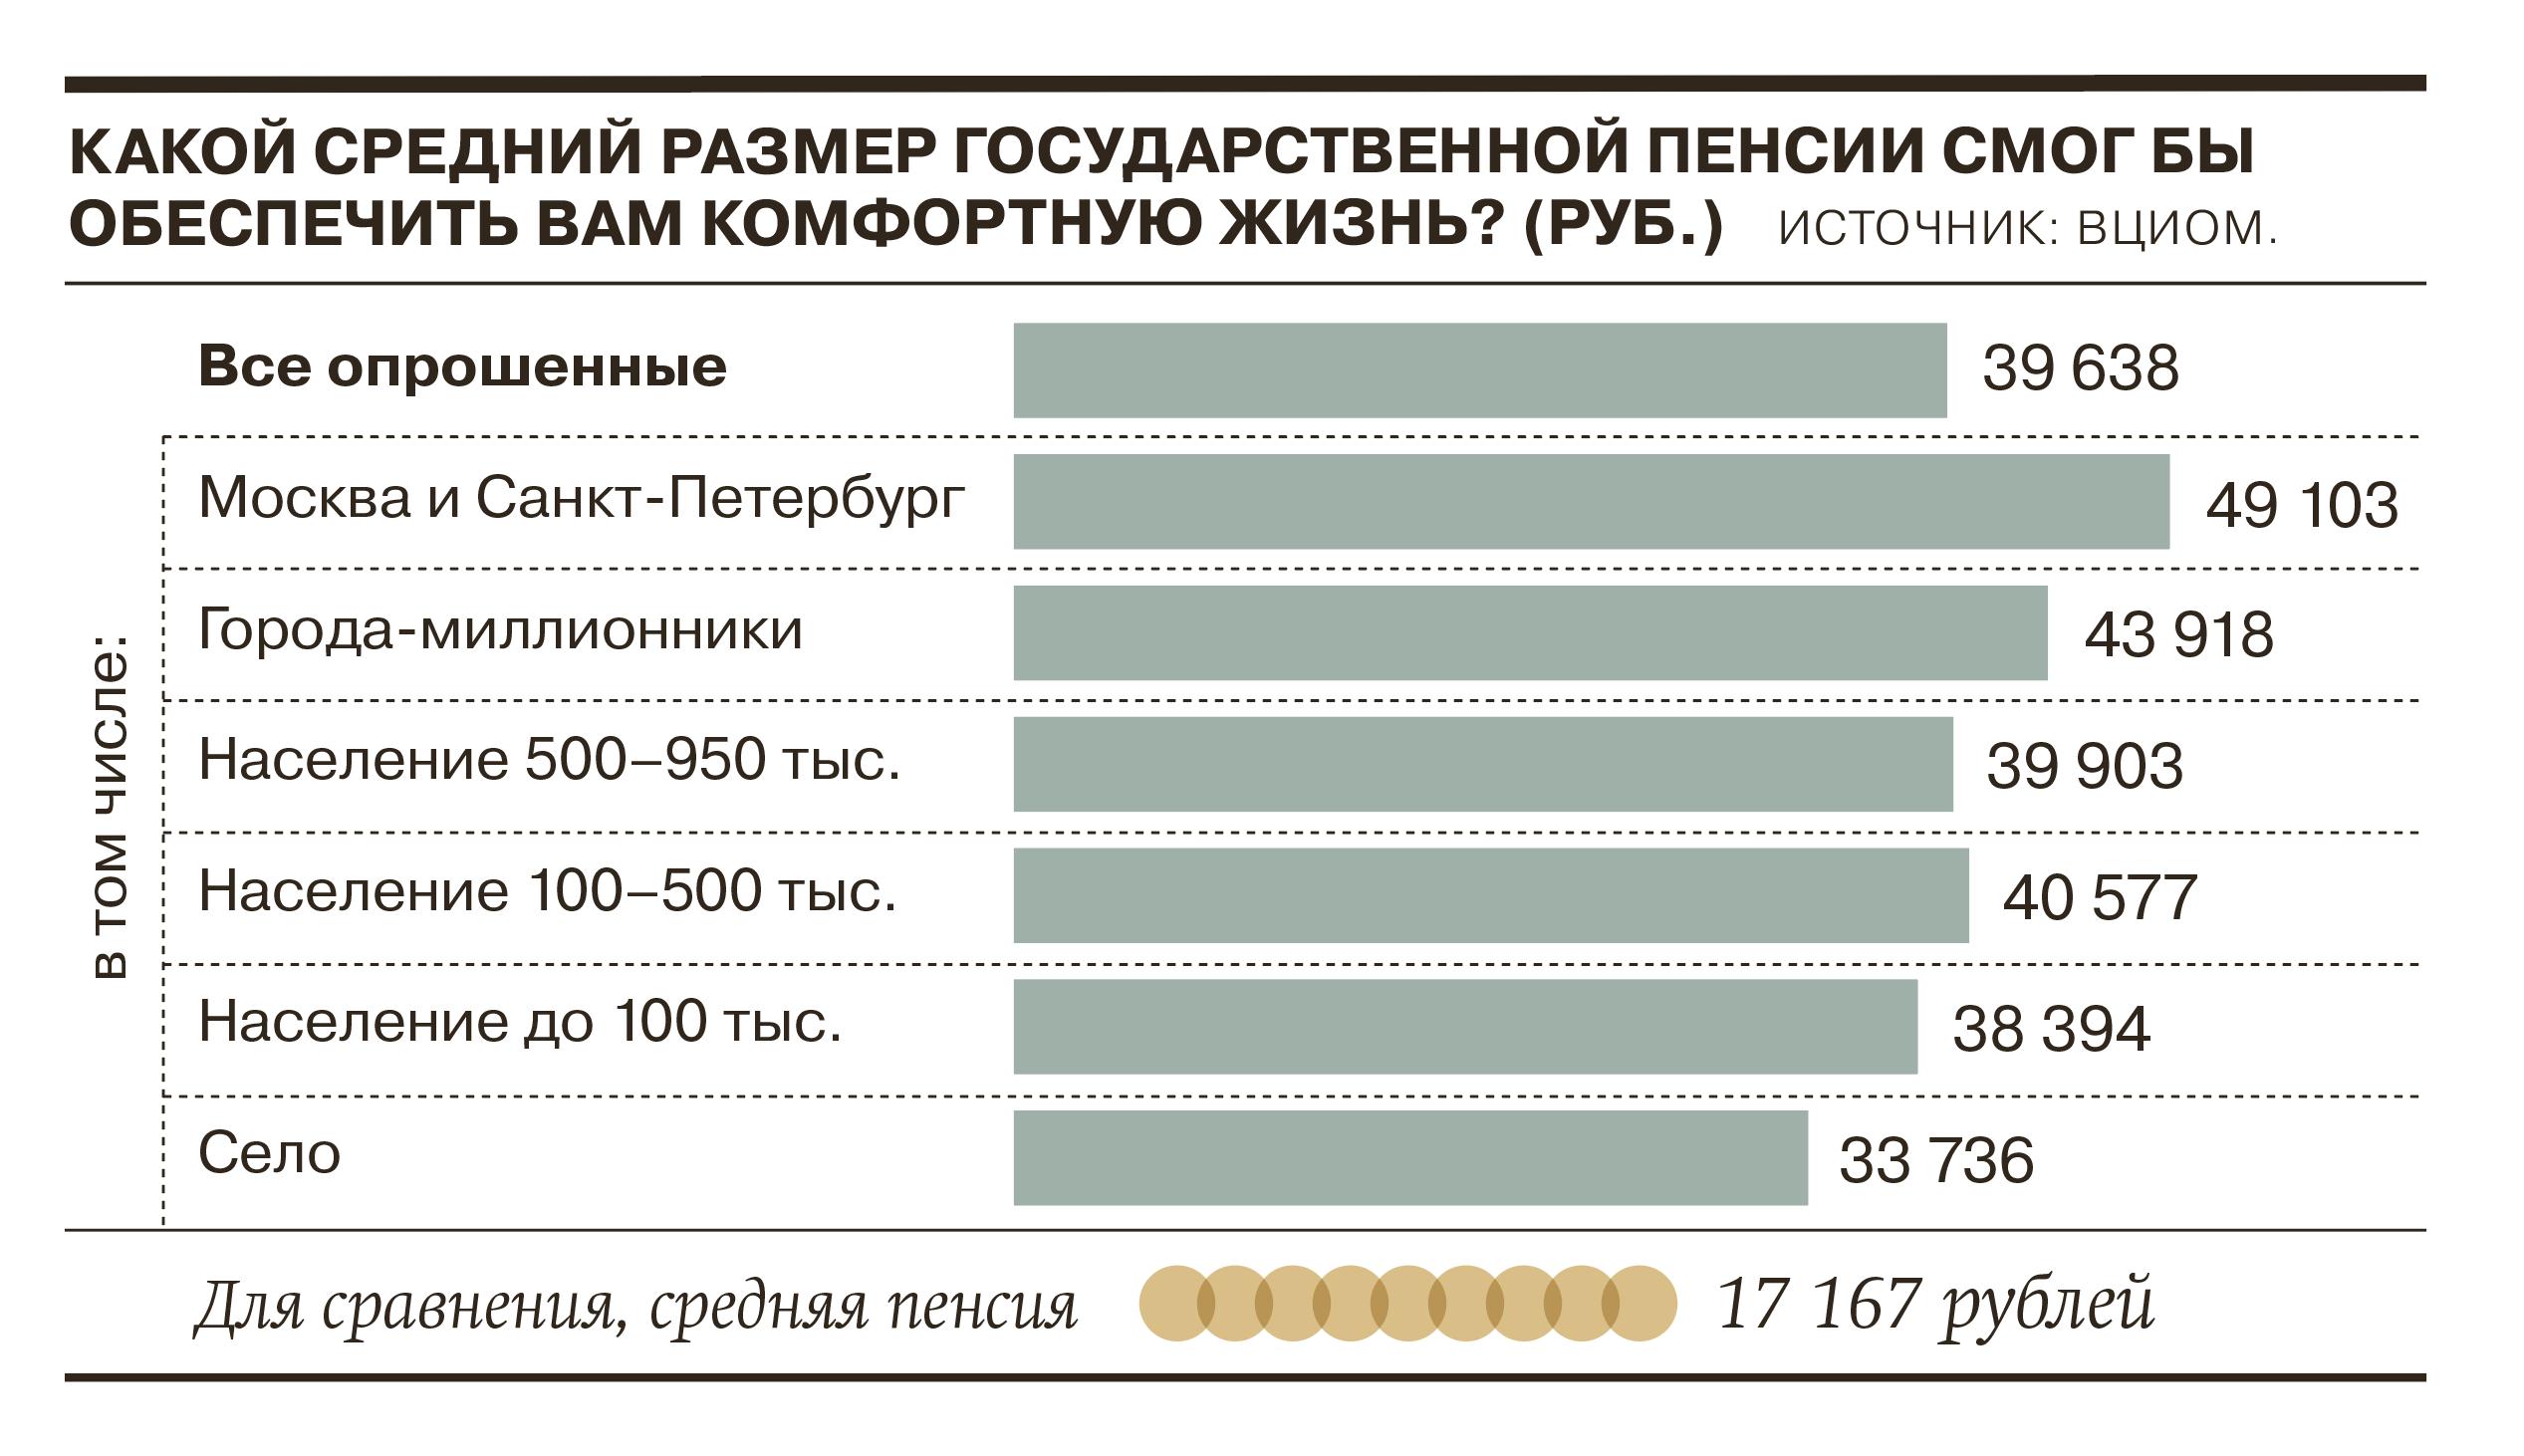 Источник инфографики — https://www.kommersant.ru/doc/5514208.